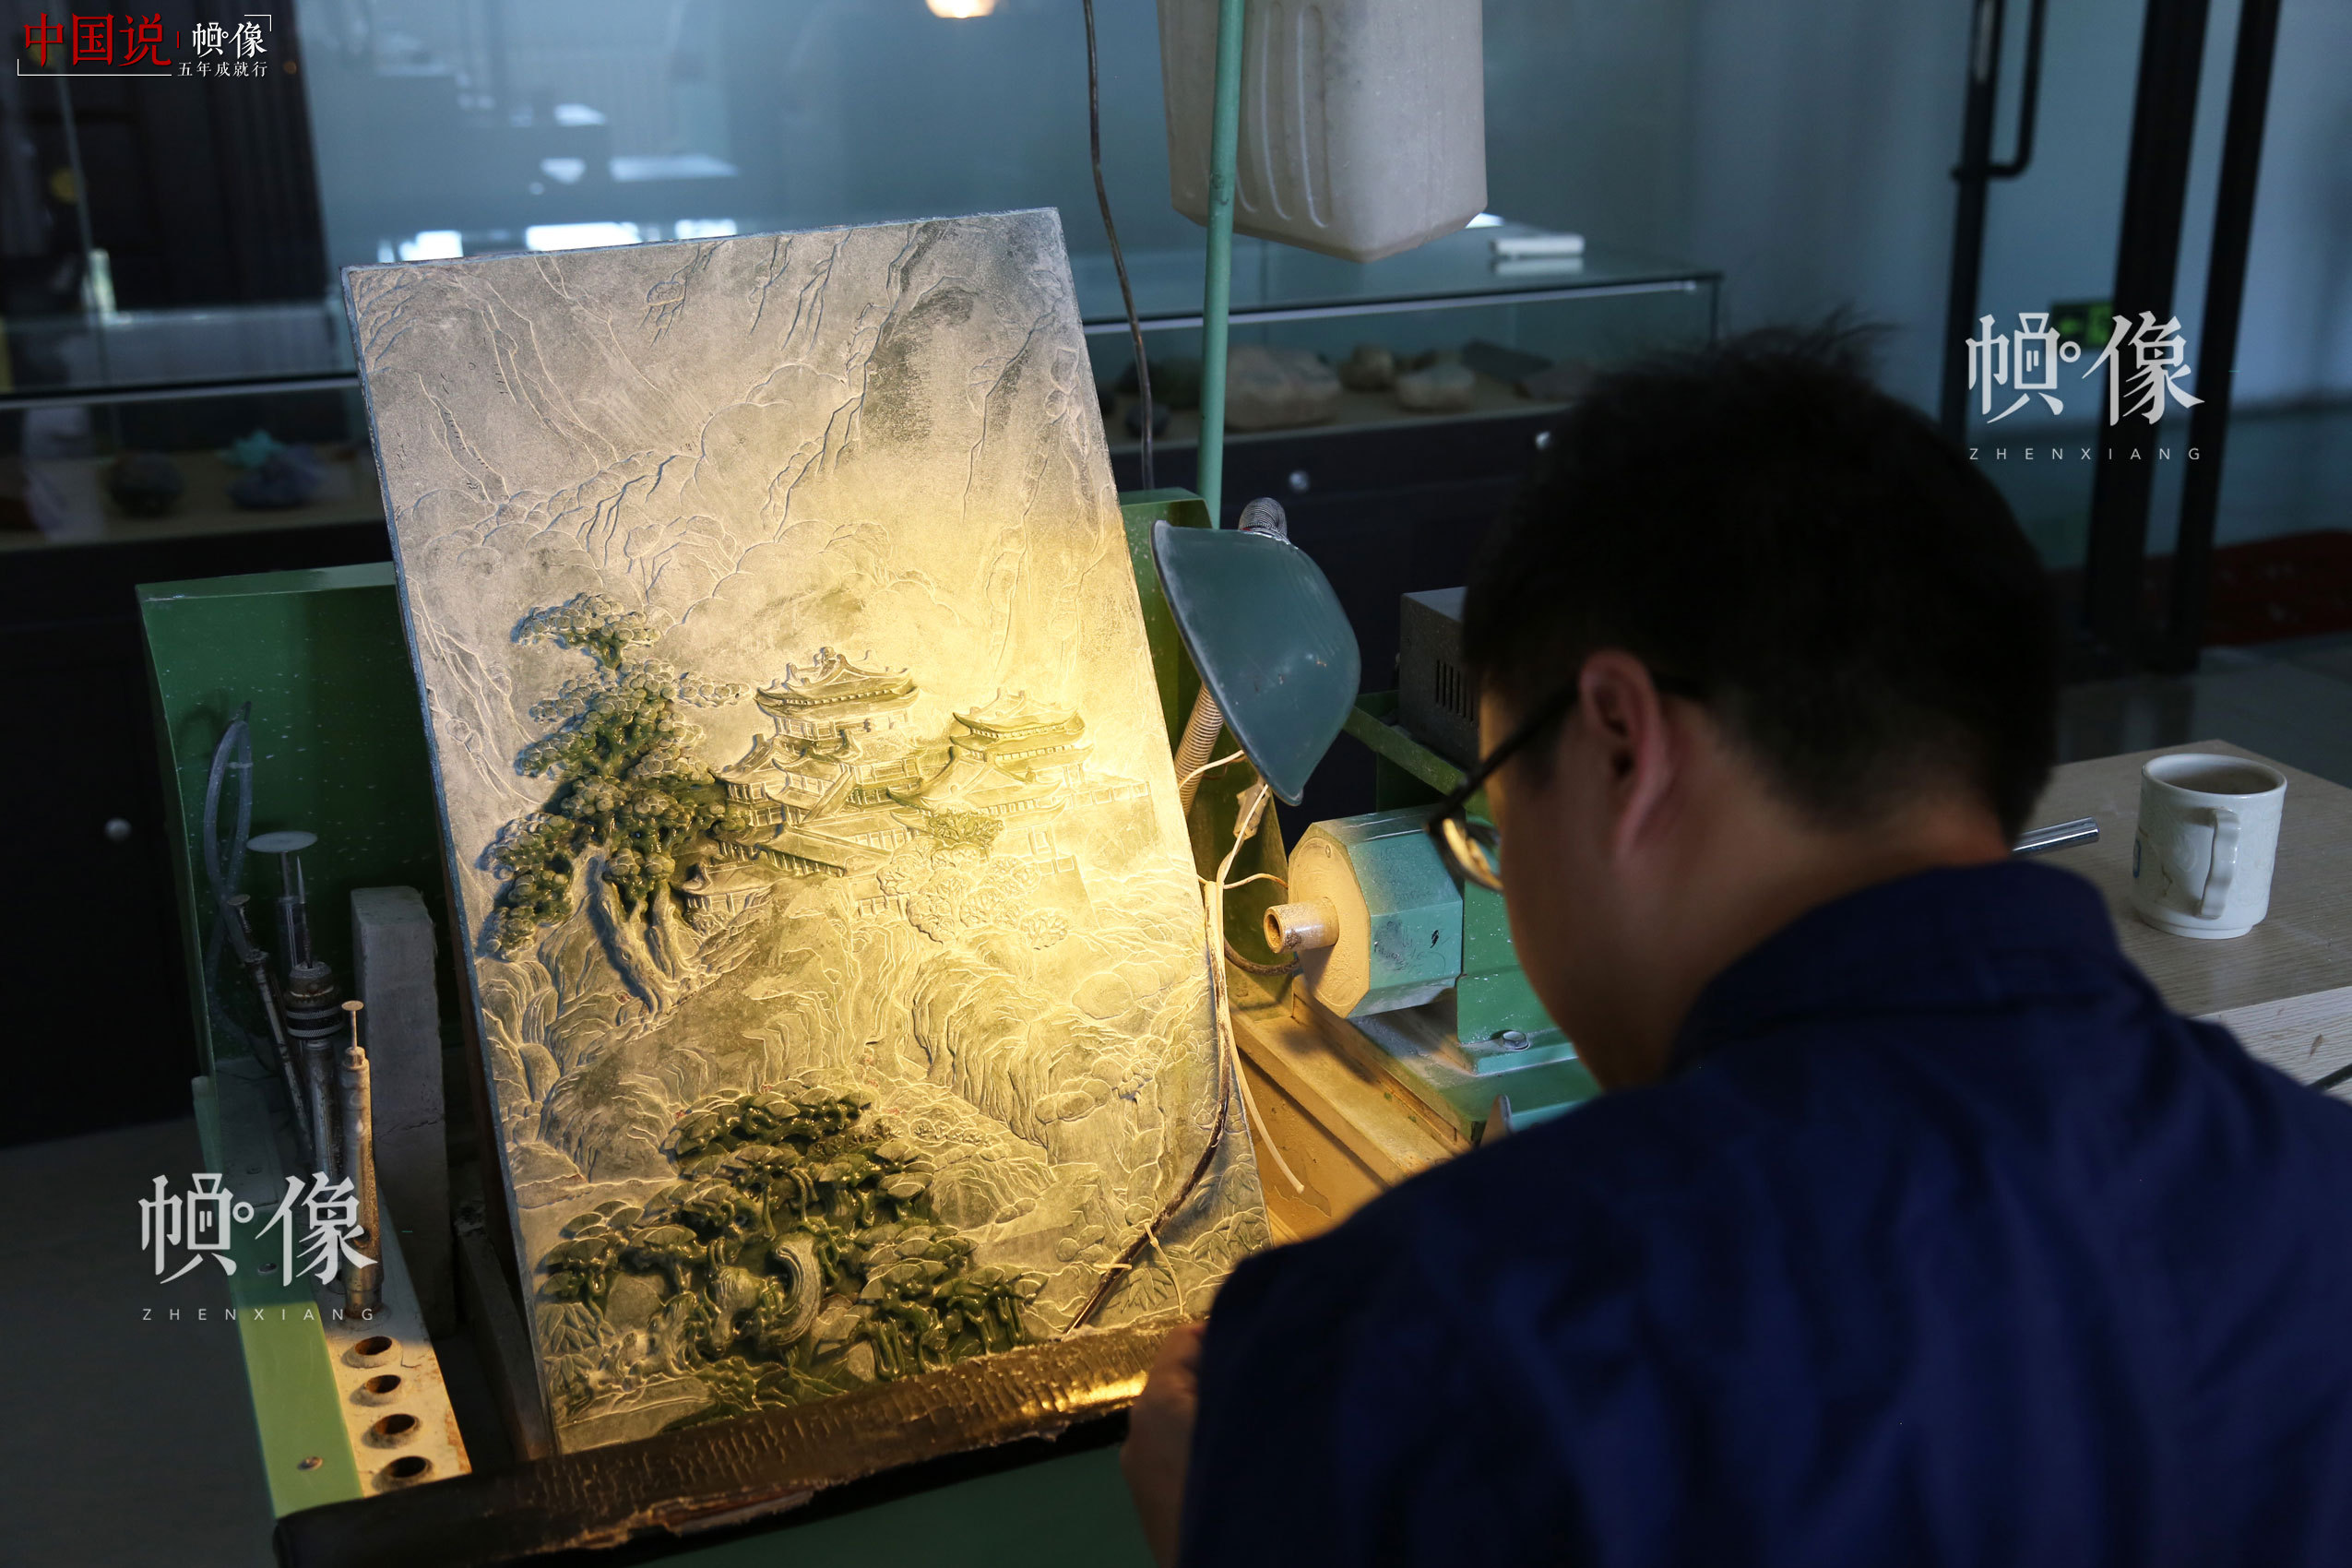 2017年9月5日，北京工美聚艺文化创意园区，玉雕工作者在雕刻玉画。中国网记者 赵超 摄